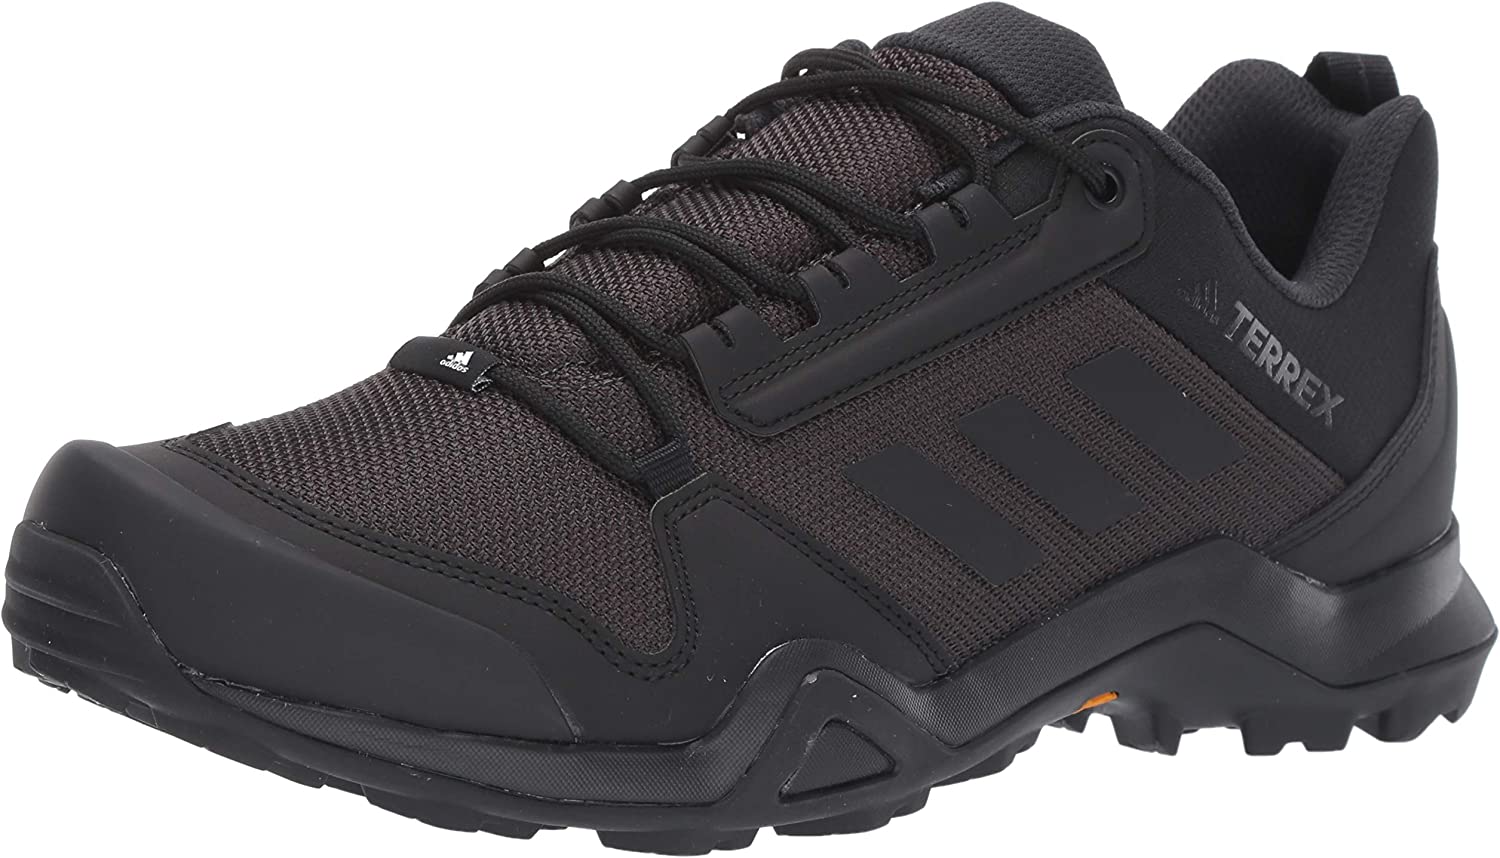 adidas Outdoor Men's Terrex Ax3 Hiking Boot